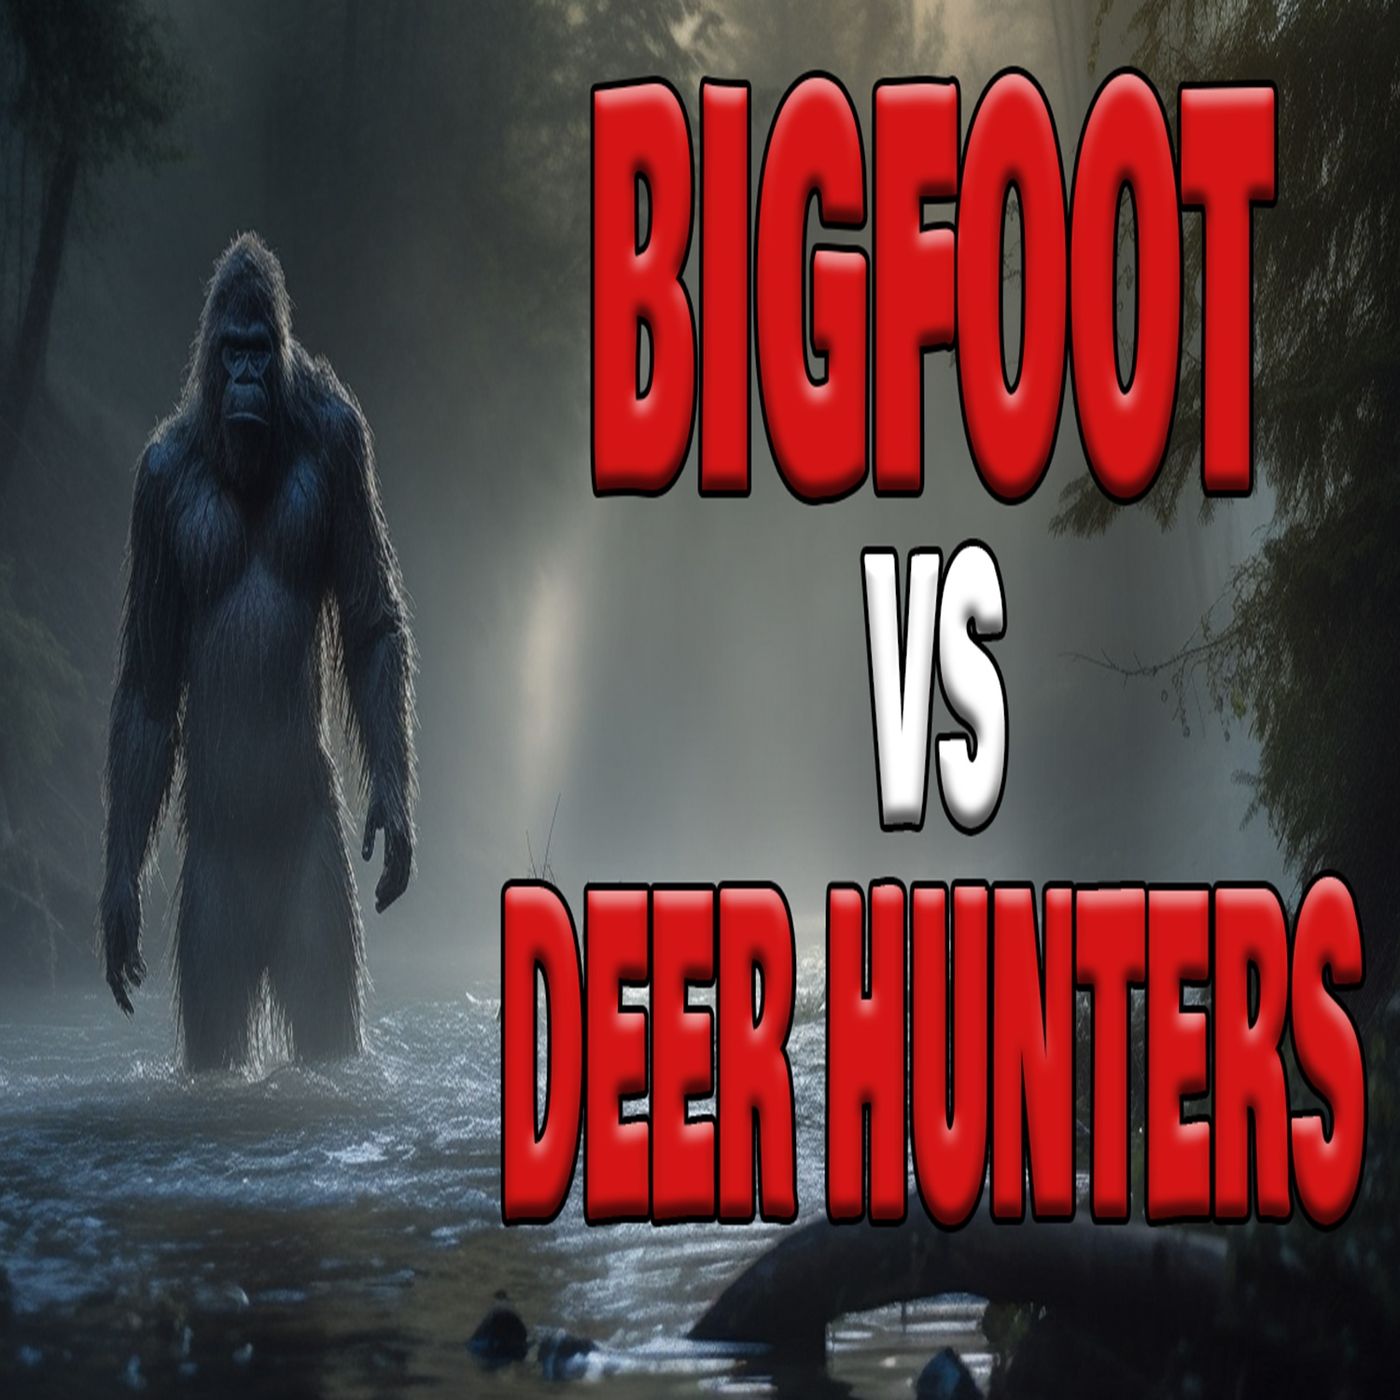 Bigfoot vs Deer Hunters